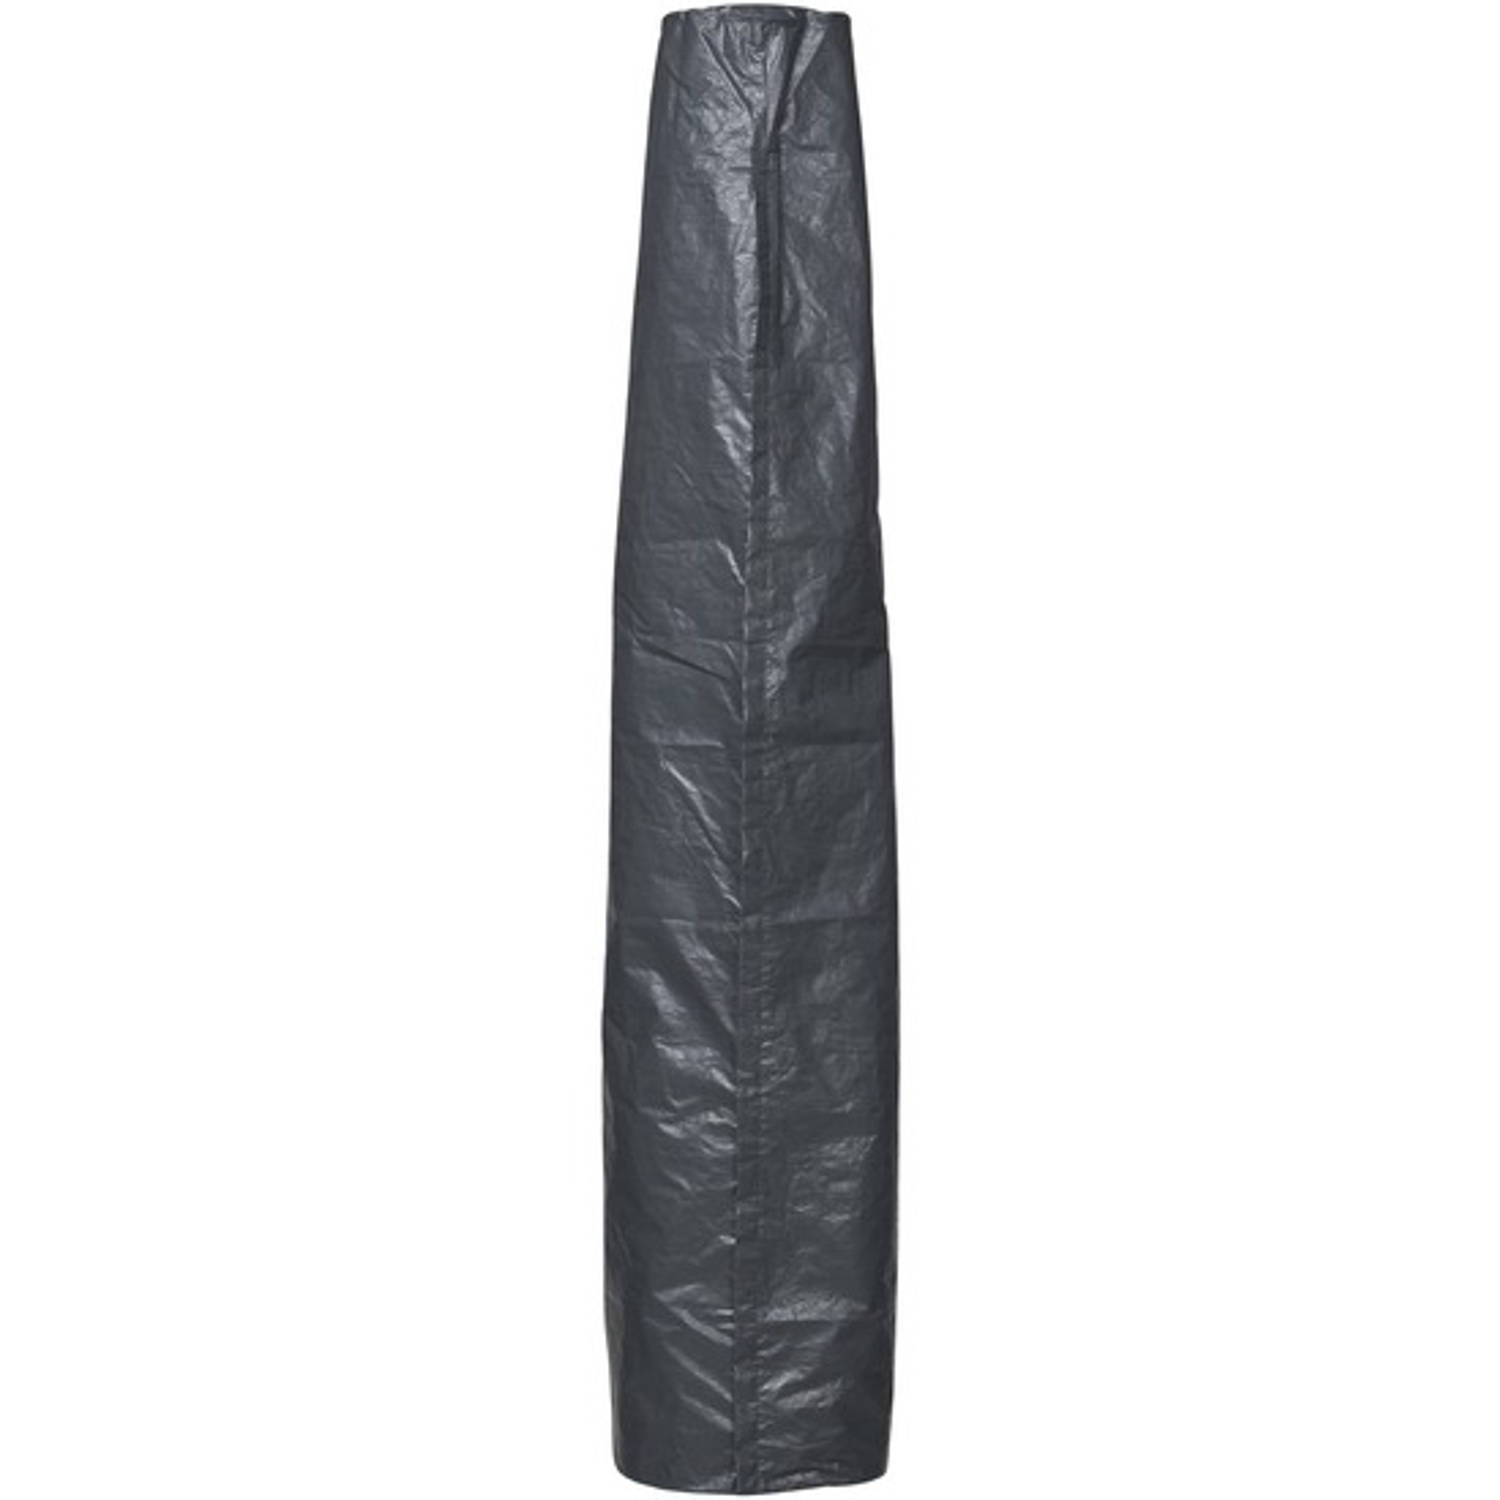 Rechte parasol afdekhoes/beschermhoes 27-42 x 202 cm - Parasolhoezen